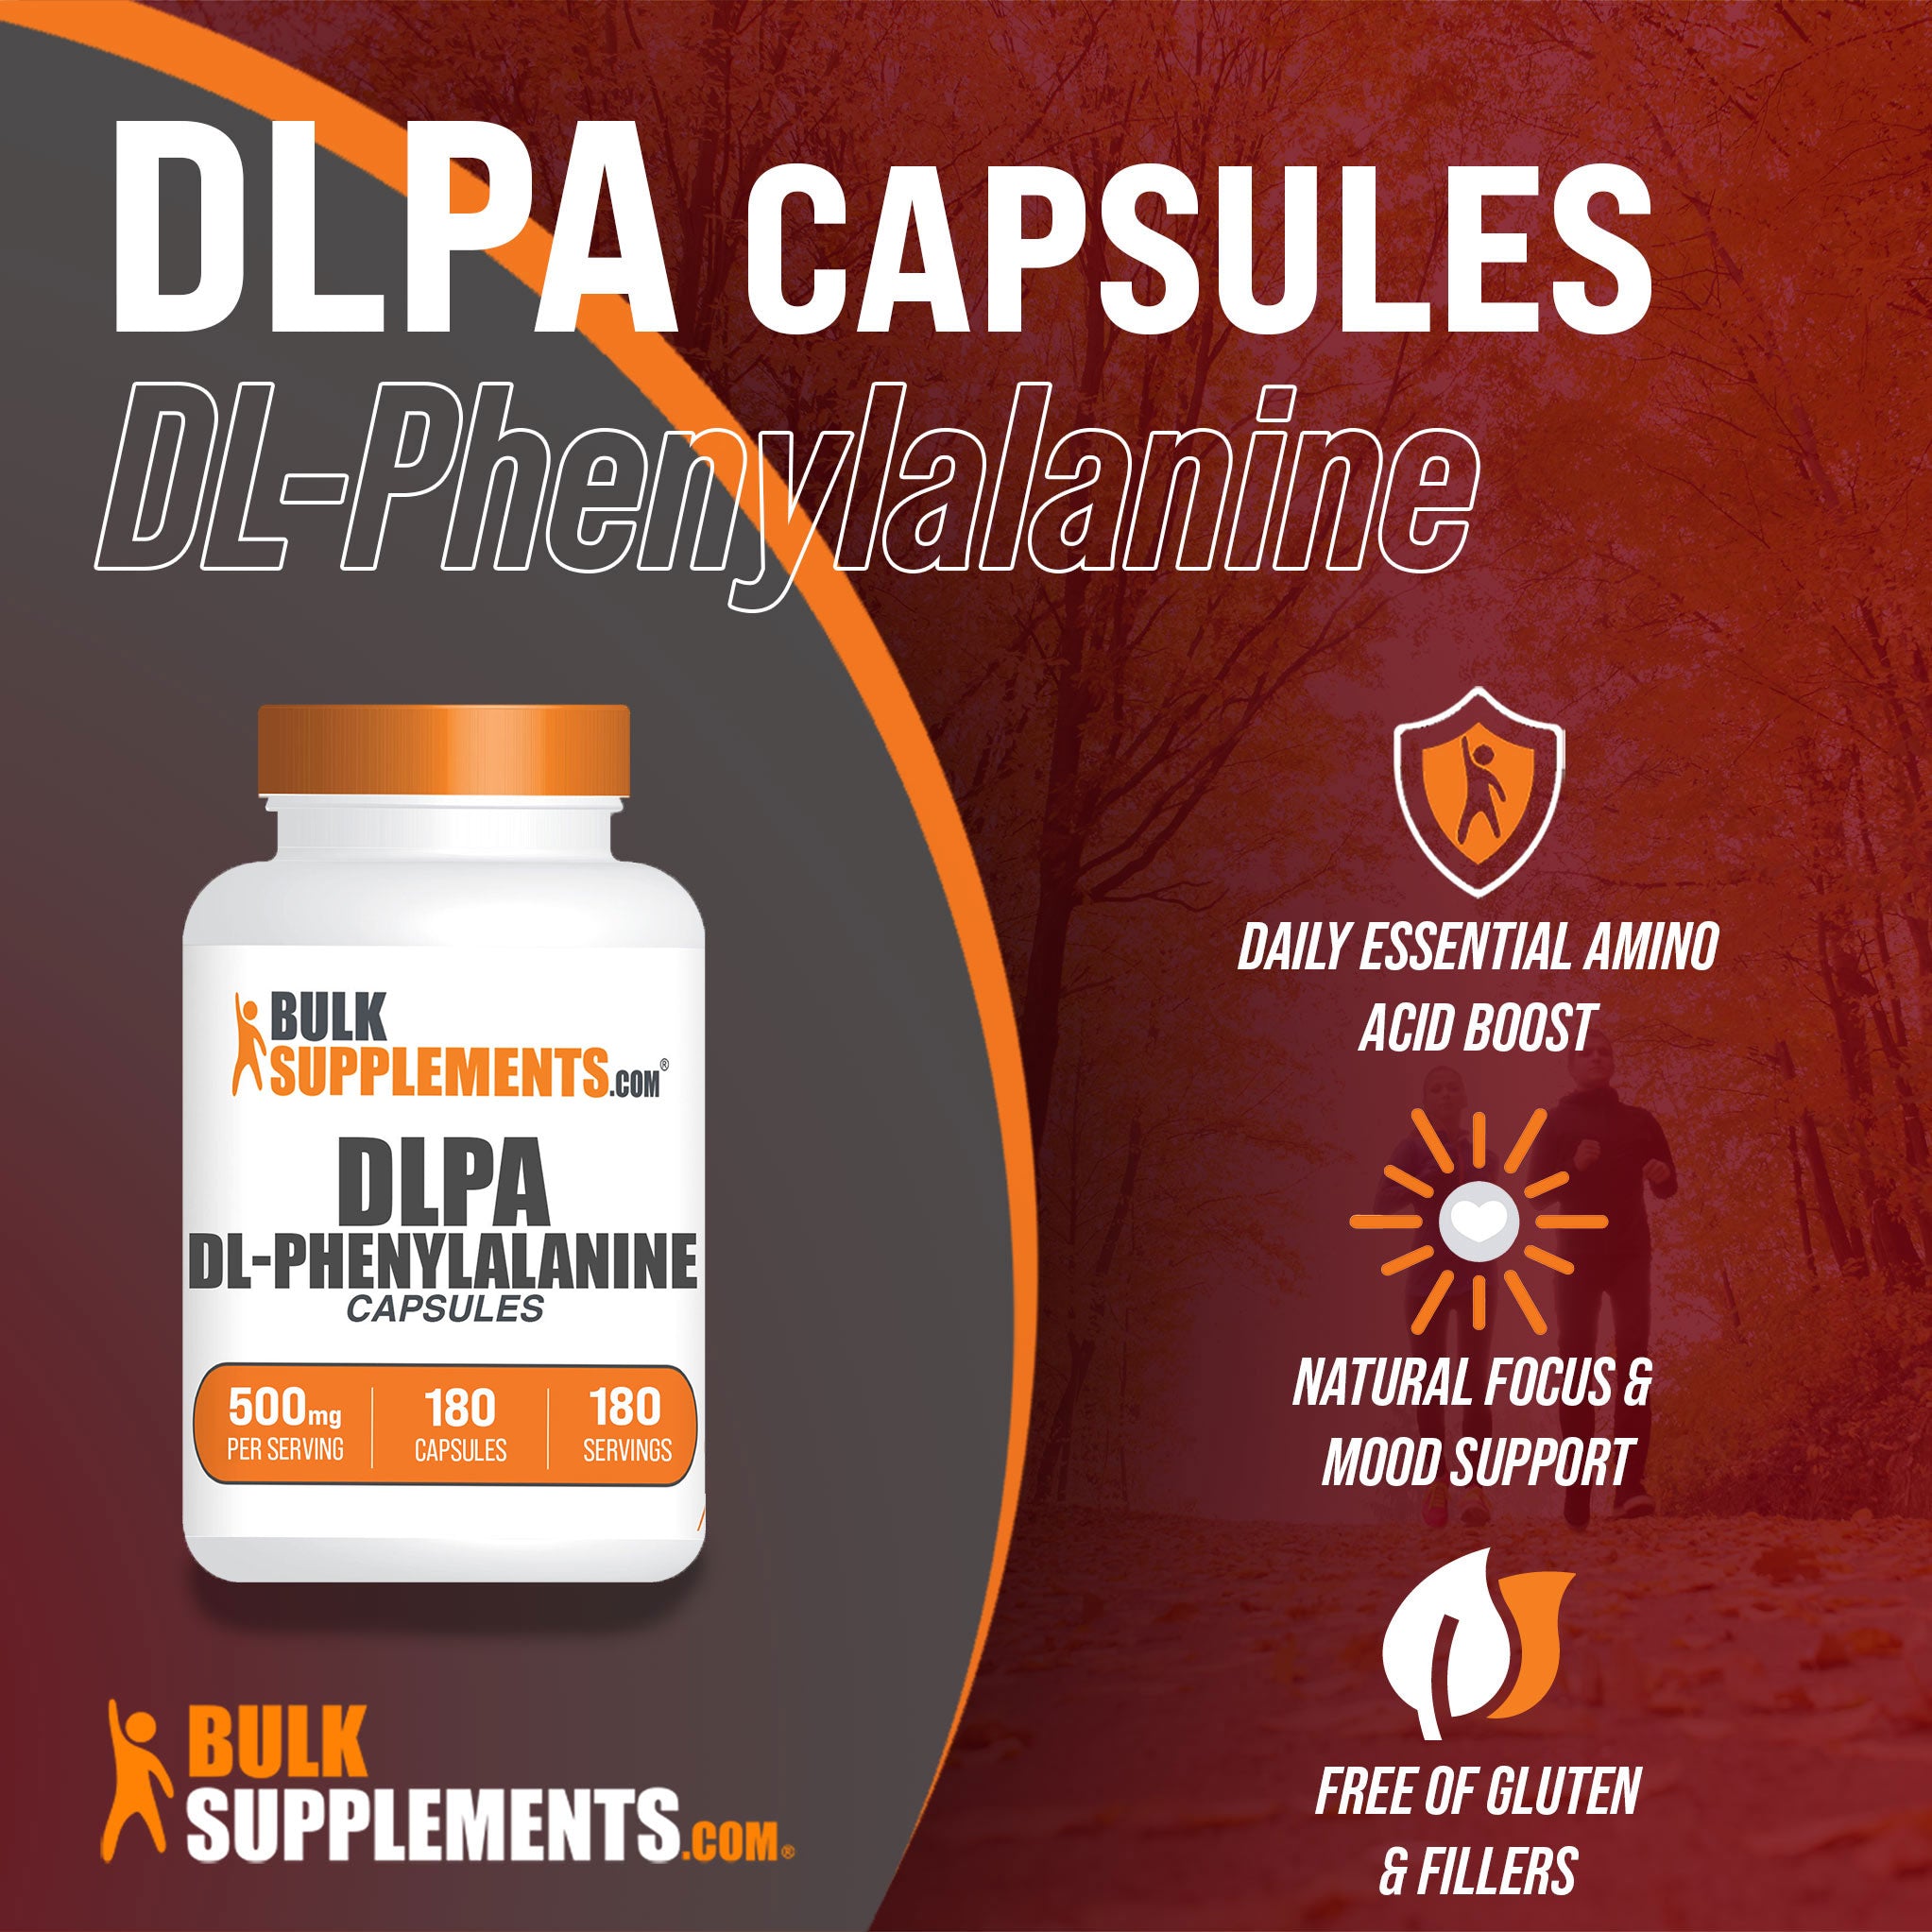 DL-Phenylalanine Benefits